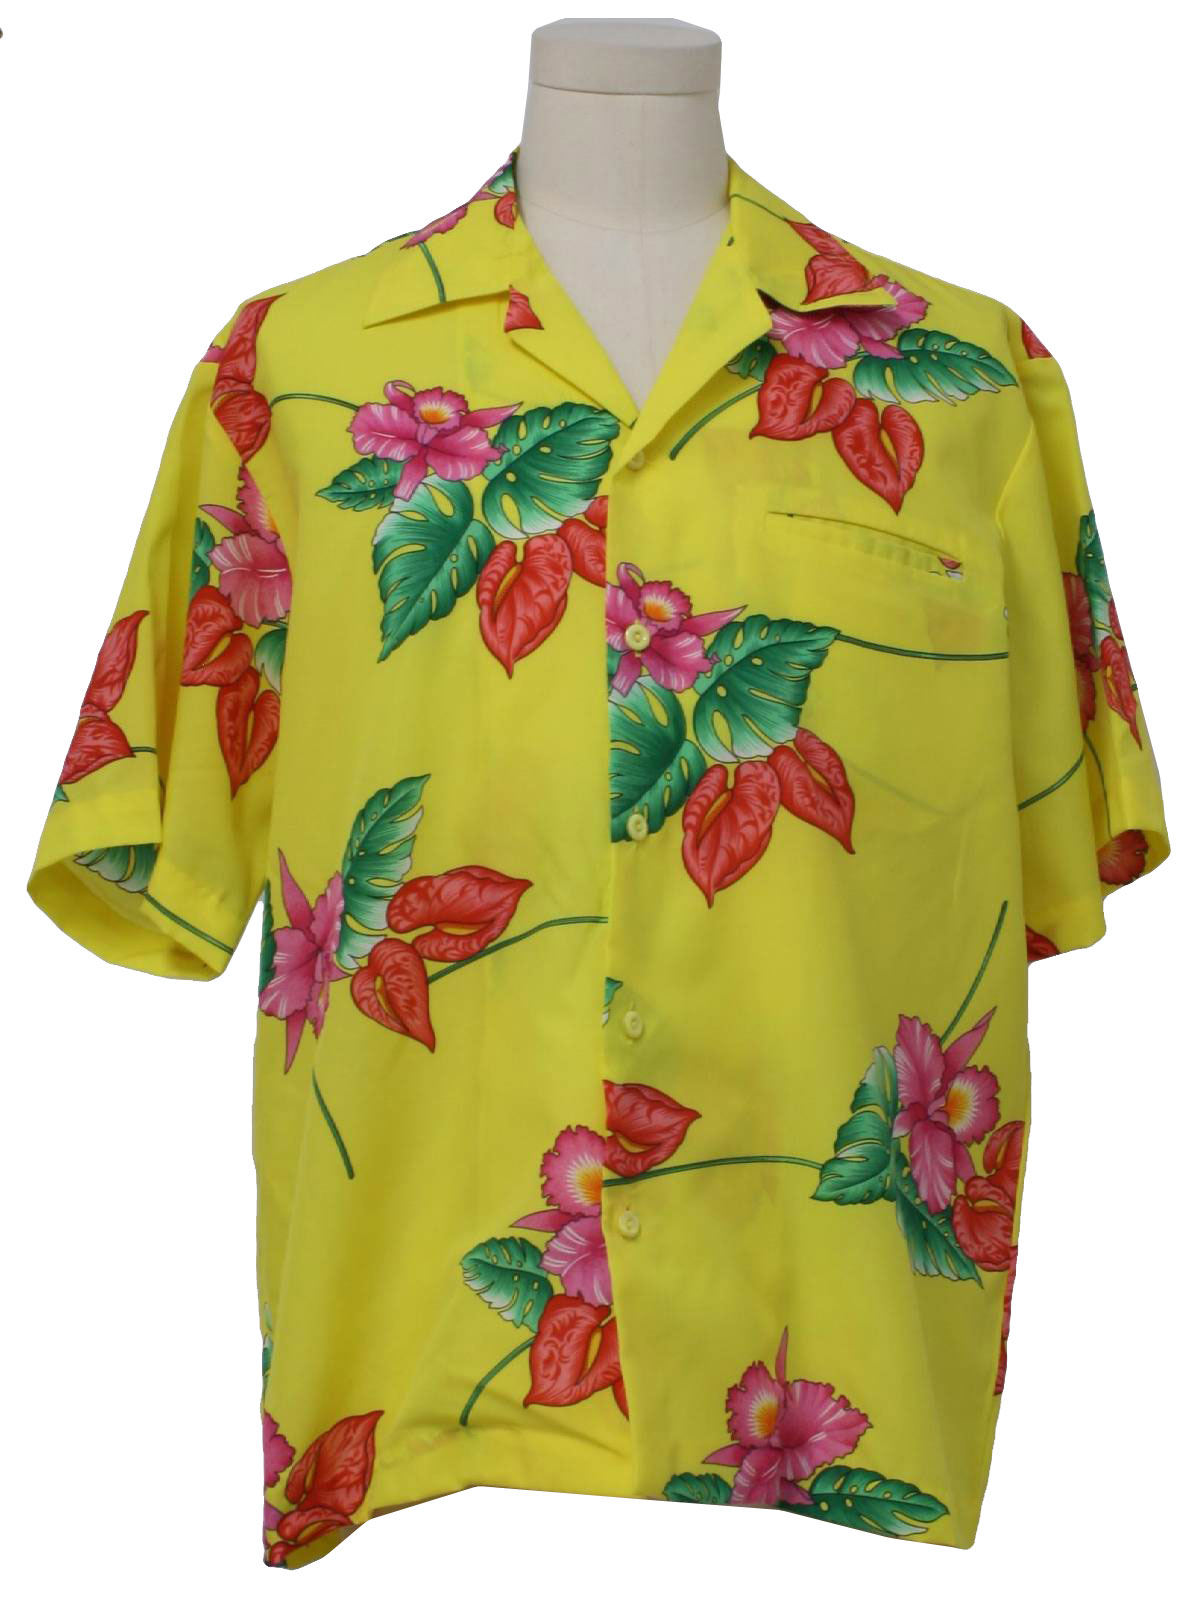 Retro 1980's Hawaiian Shirt (Rainbow paradise) : 80s -Rainbow paradise ...